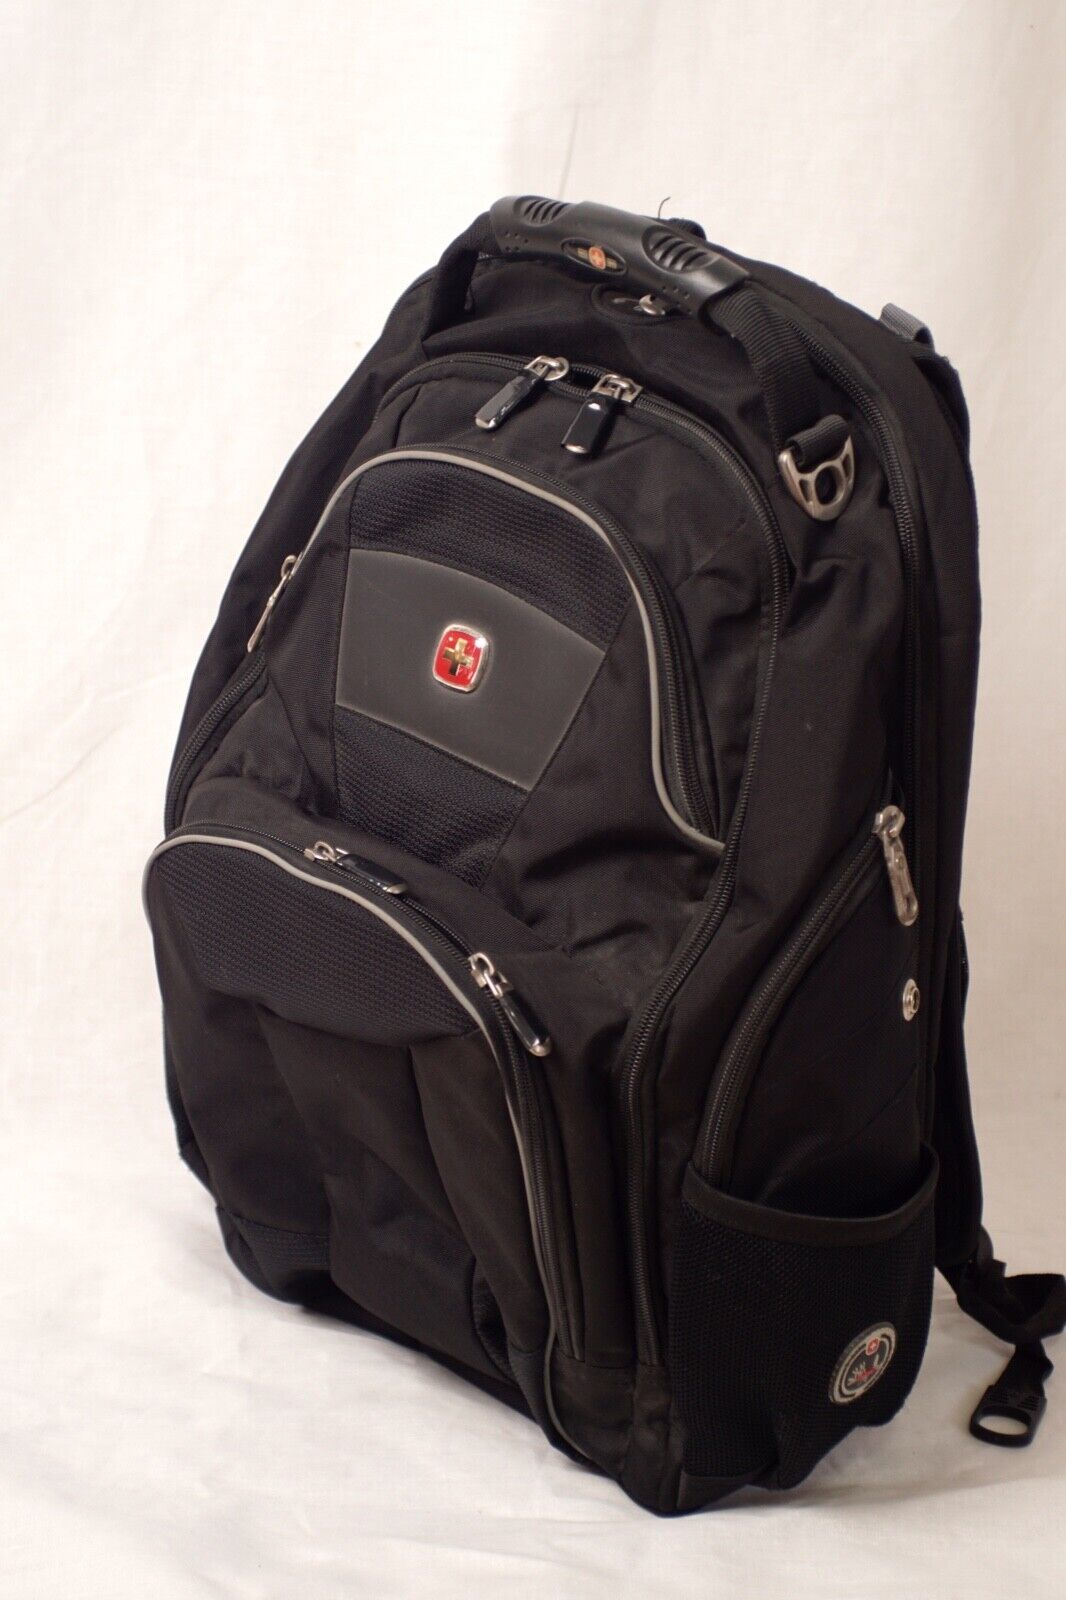 SwissGear Scansmart Airflow Laptop Backpack - Black